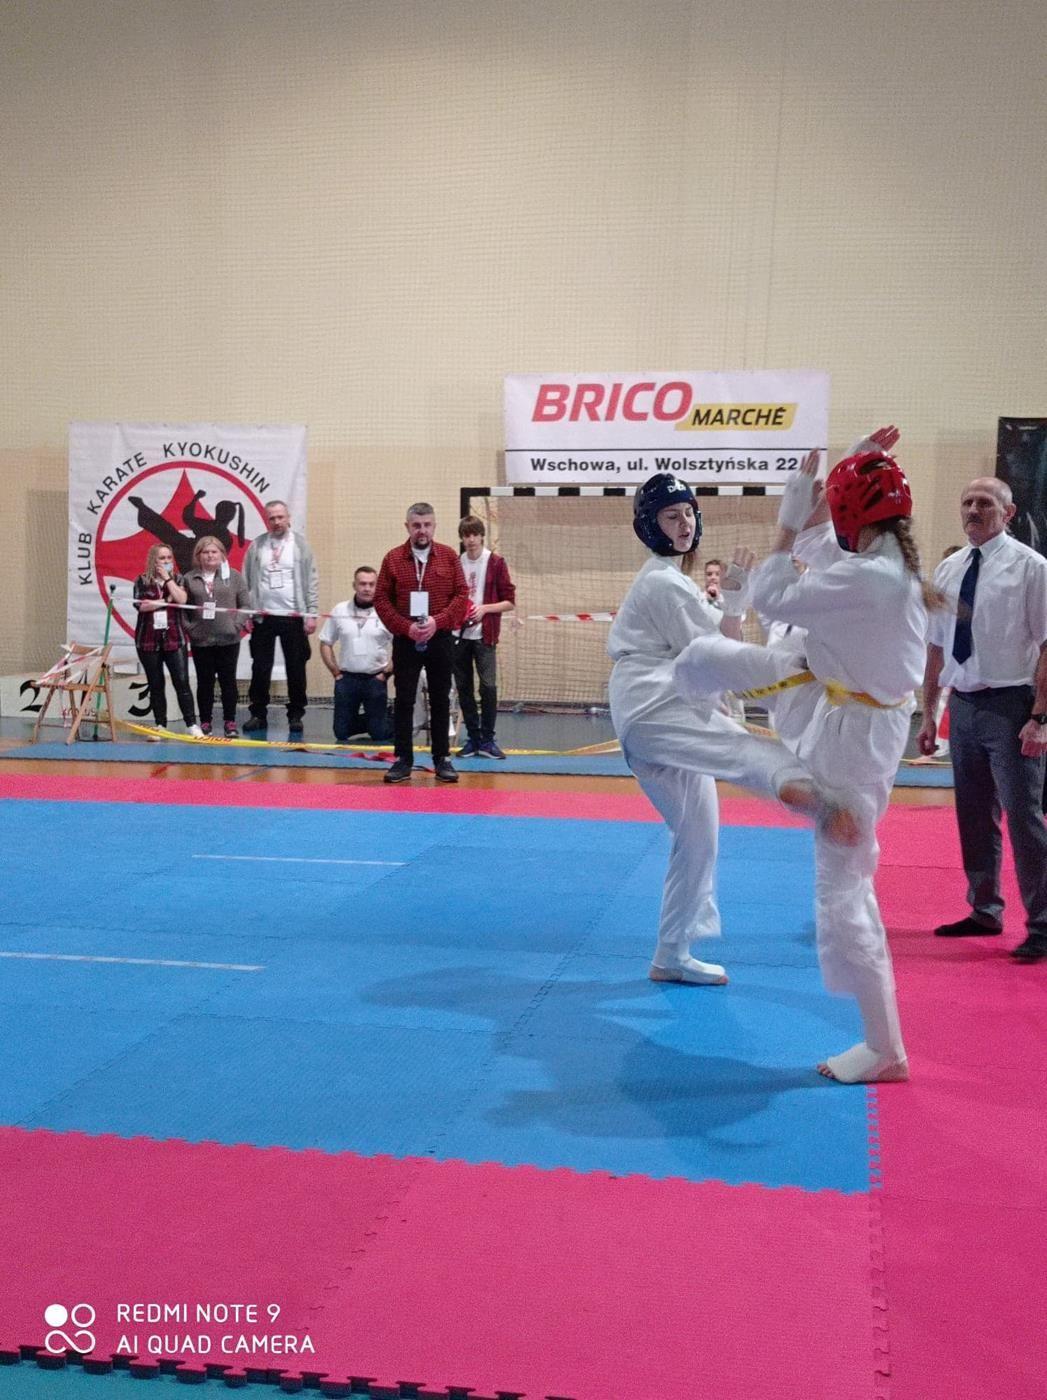 Ogólnopolski Turniej Karate Kyokushin w Brennie, zawodnicy na macie - kliknięcie spowoduje powiększenie obrazka